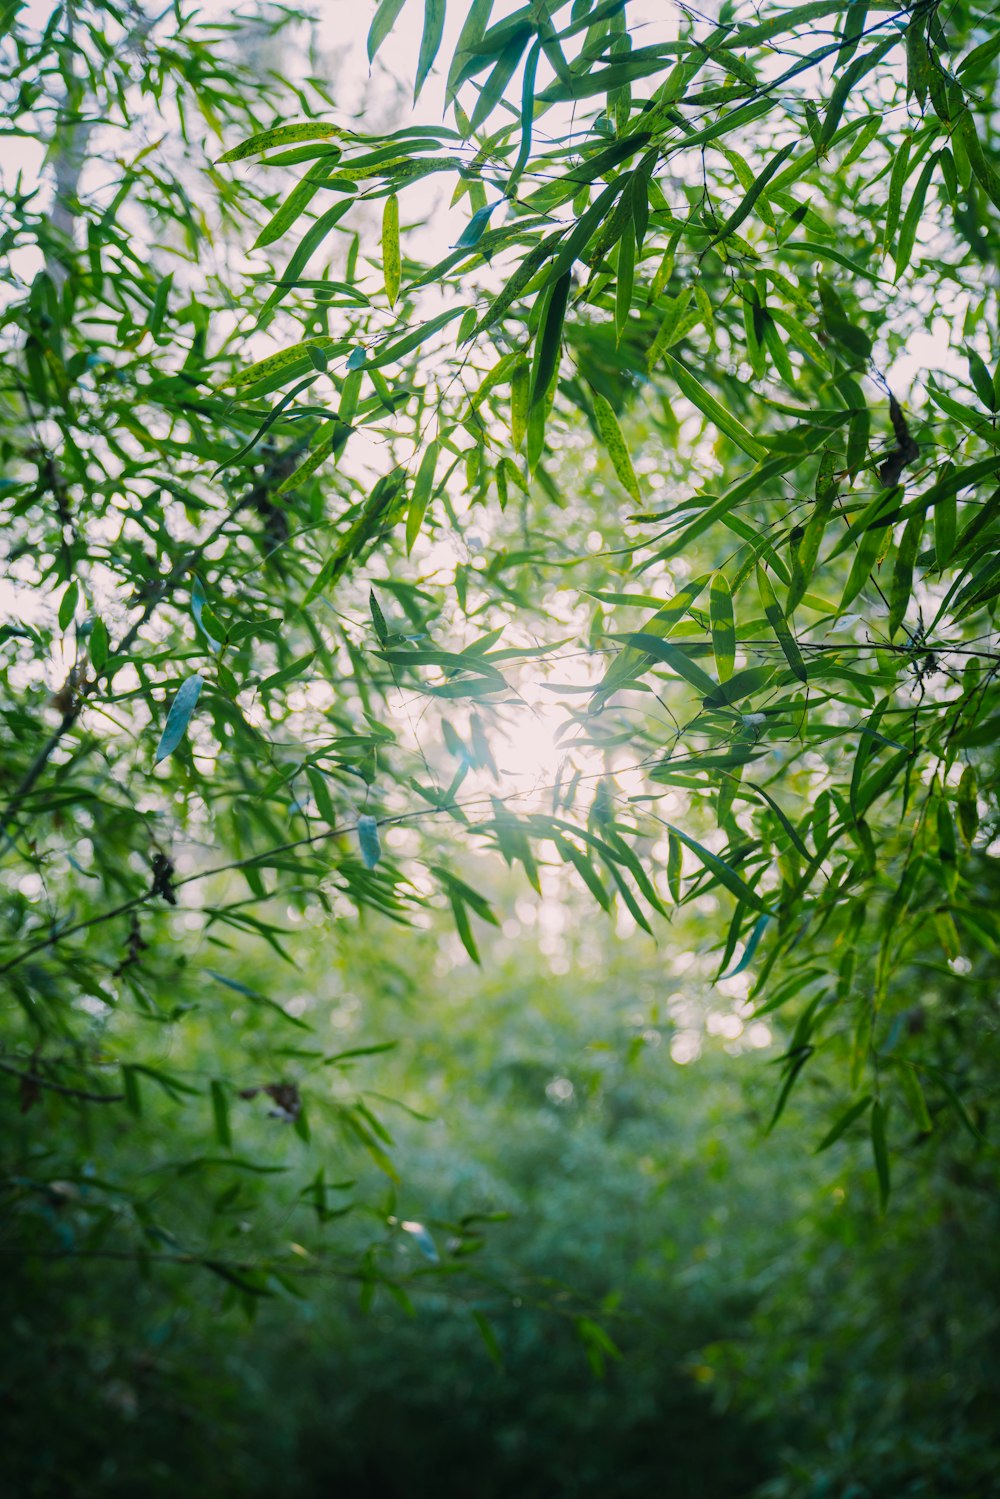 Le soleil brille à travers les feuilles d’un bambou